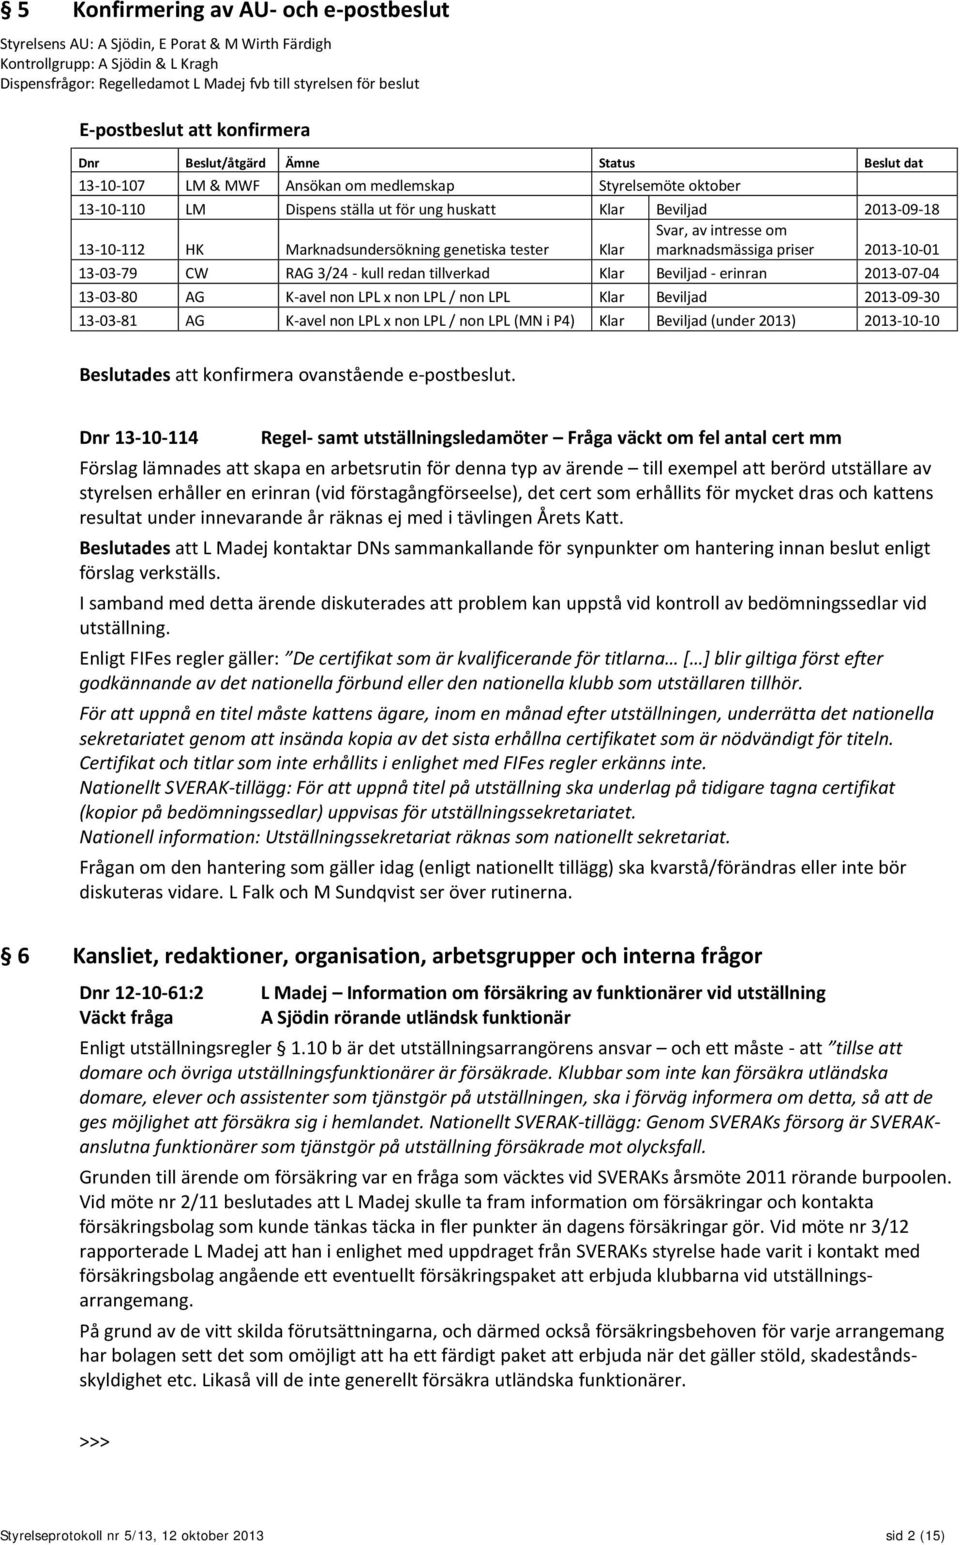 2013-09-18 13-10-112 HK Marknadsundersökning genetiska tester Klar Svar, av intresse om marknadsmässiga priser 2013-10-01 13-03-79 CW RAG 3/24 - kull redan tillverkad Klar Beviljad - erinran